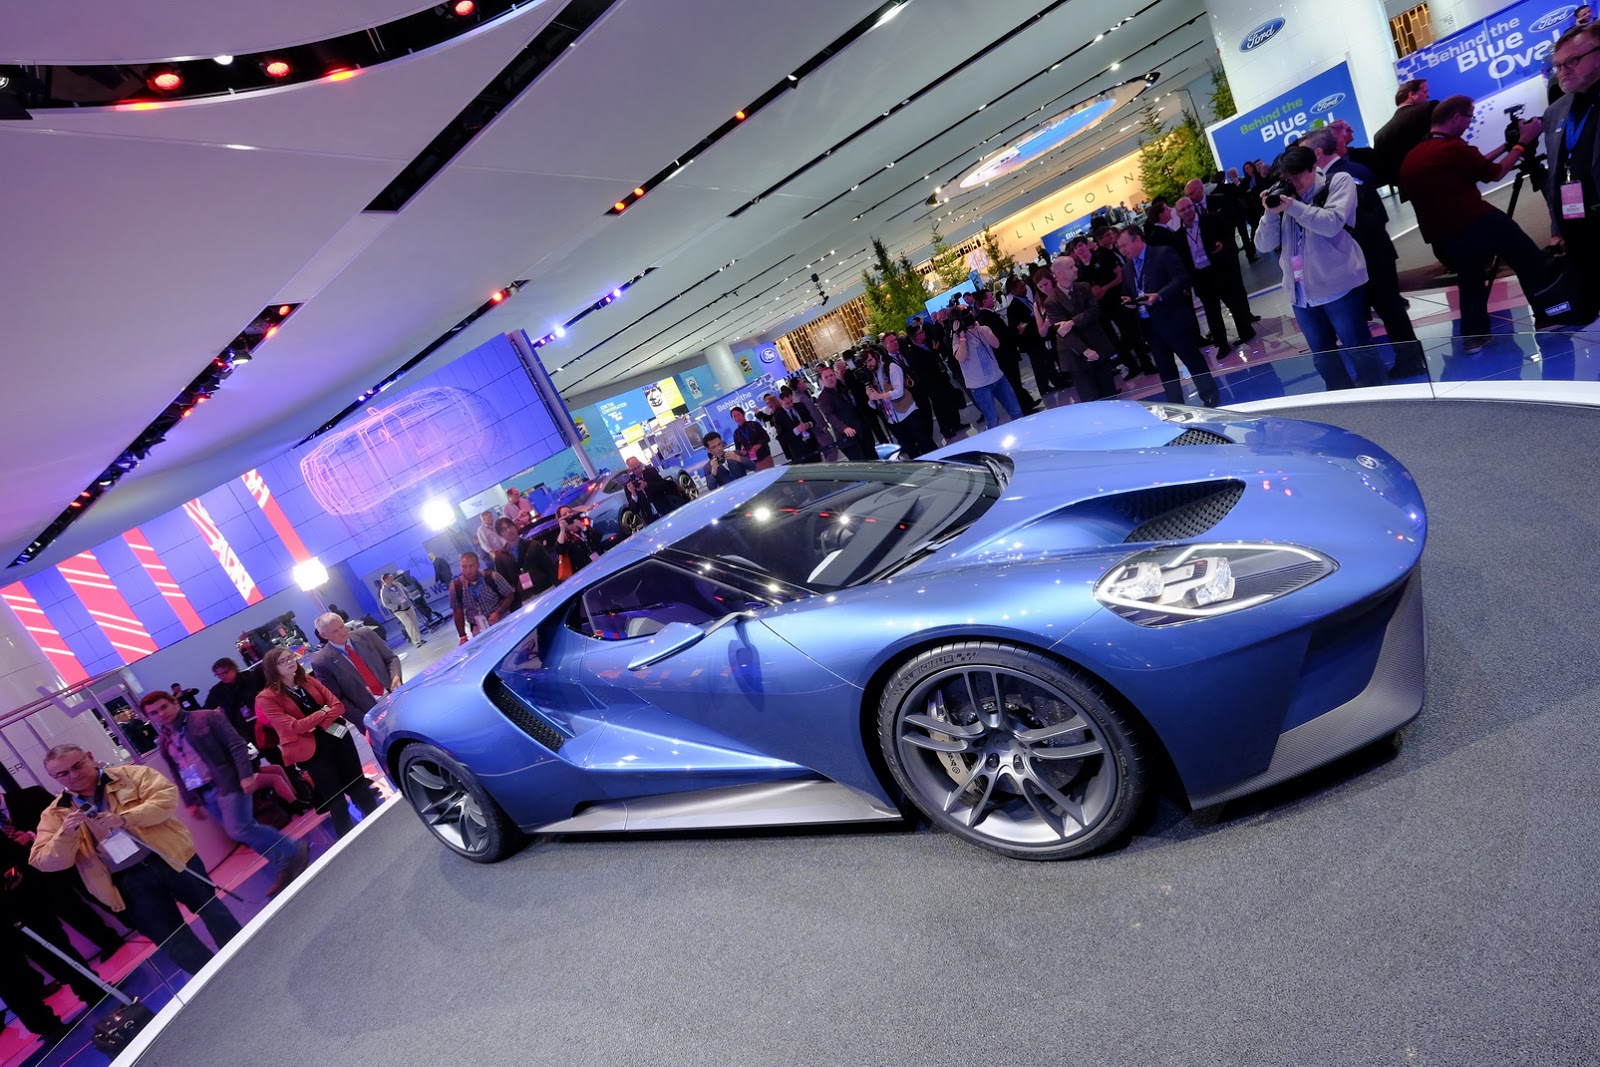 Siêu xe Ford GT dự kiến có giá khoảng dưới 200.000 USD